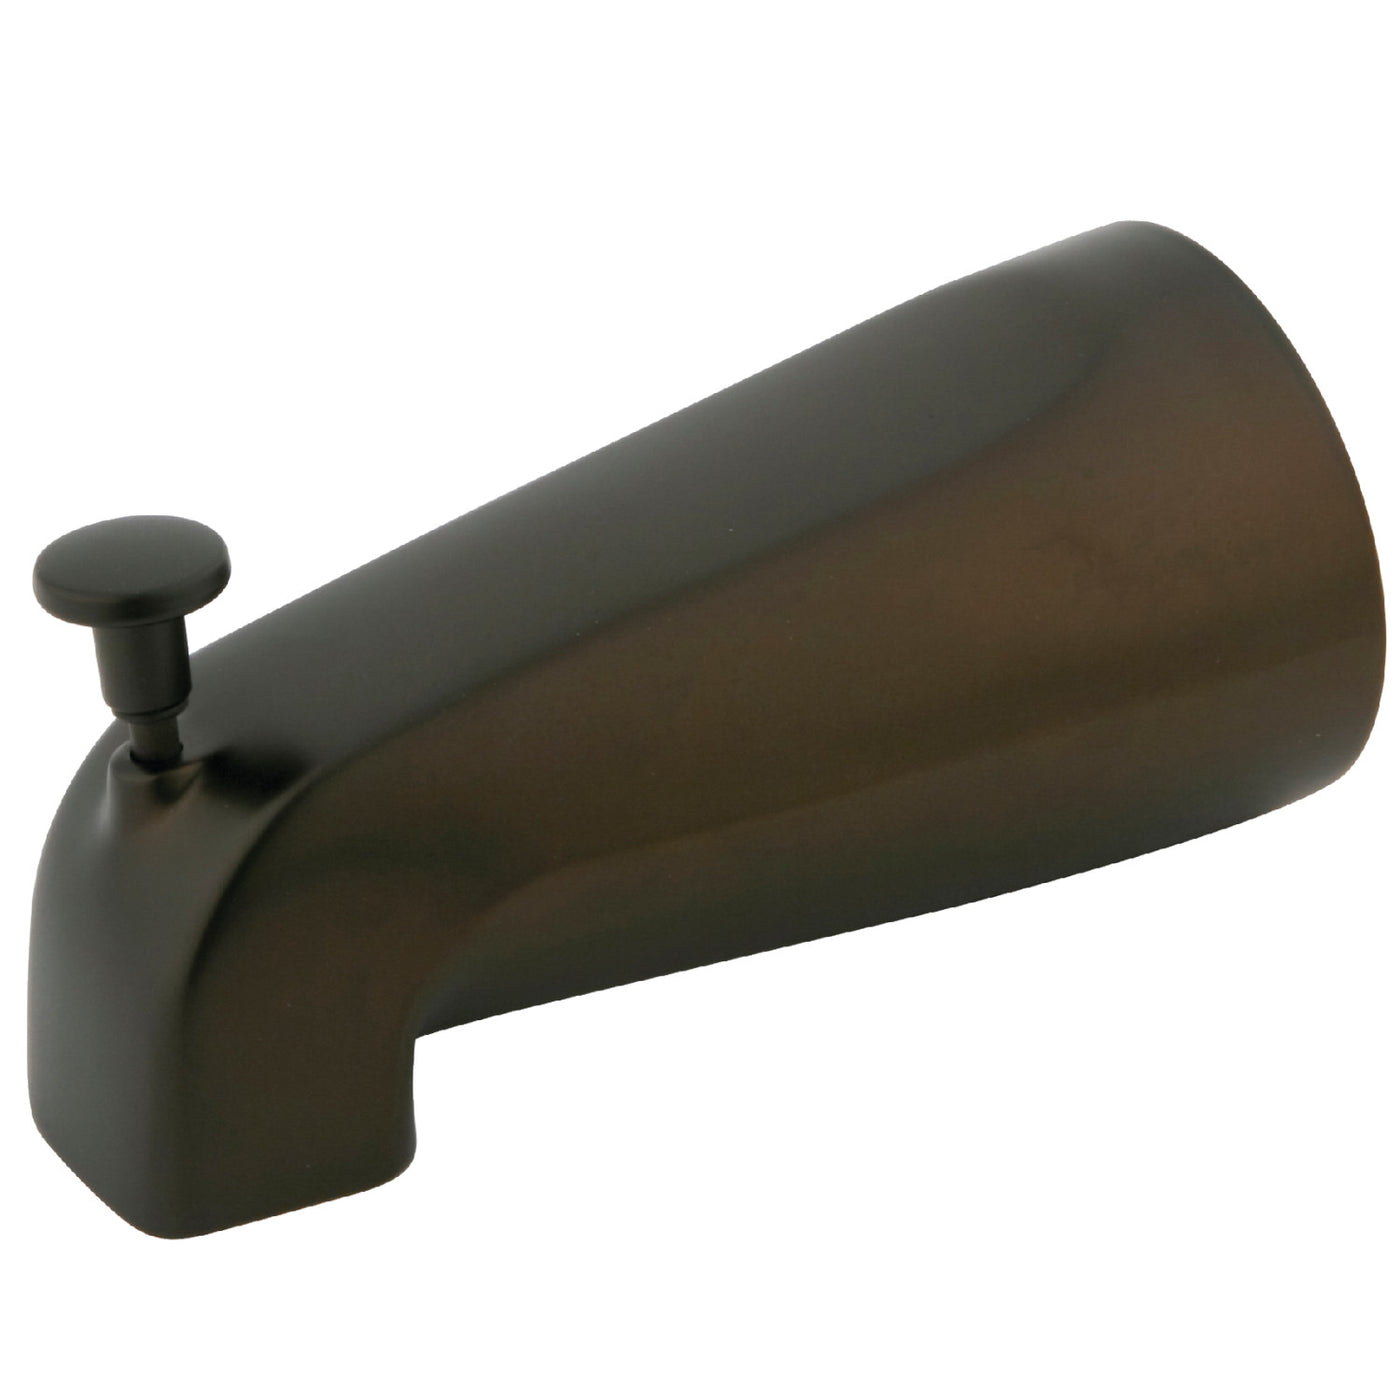 Elements of Design DK188A5 5-1/4 Inch Zinc Tub Spout with Diverter, Oil Rubbed Bronze